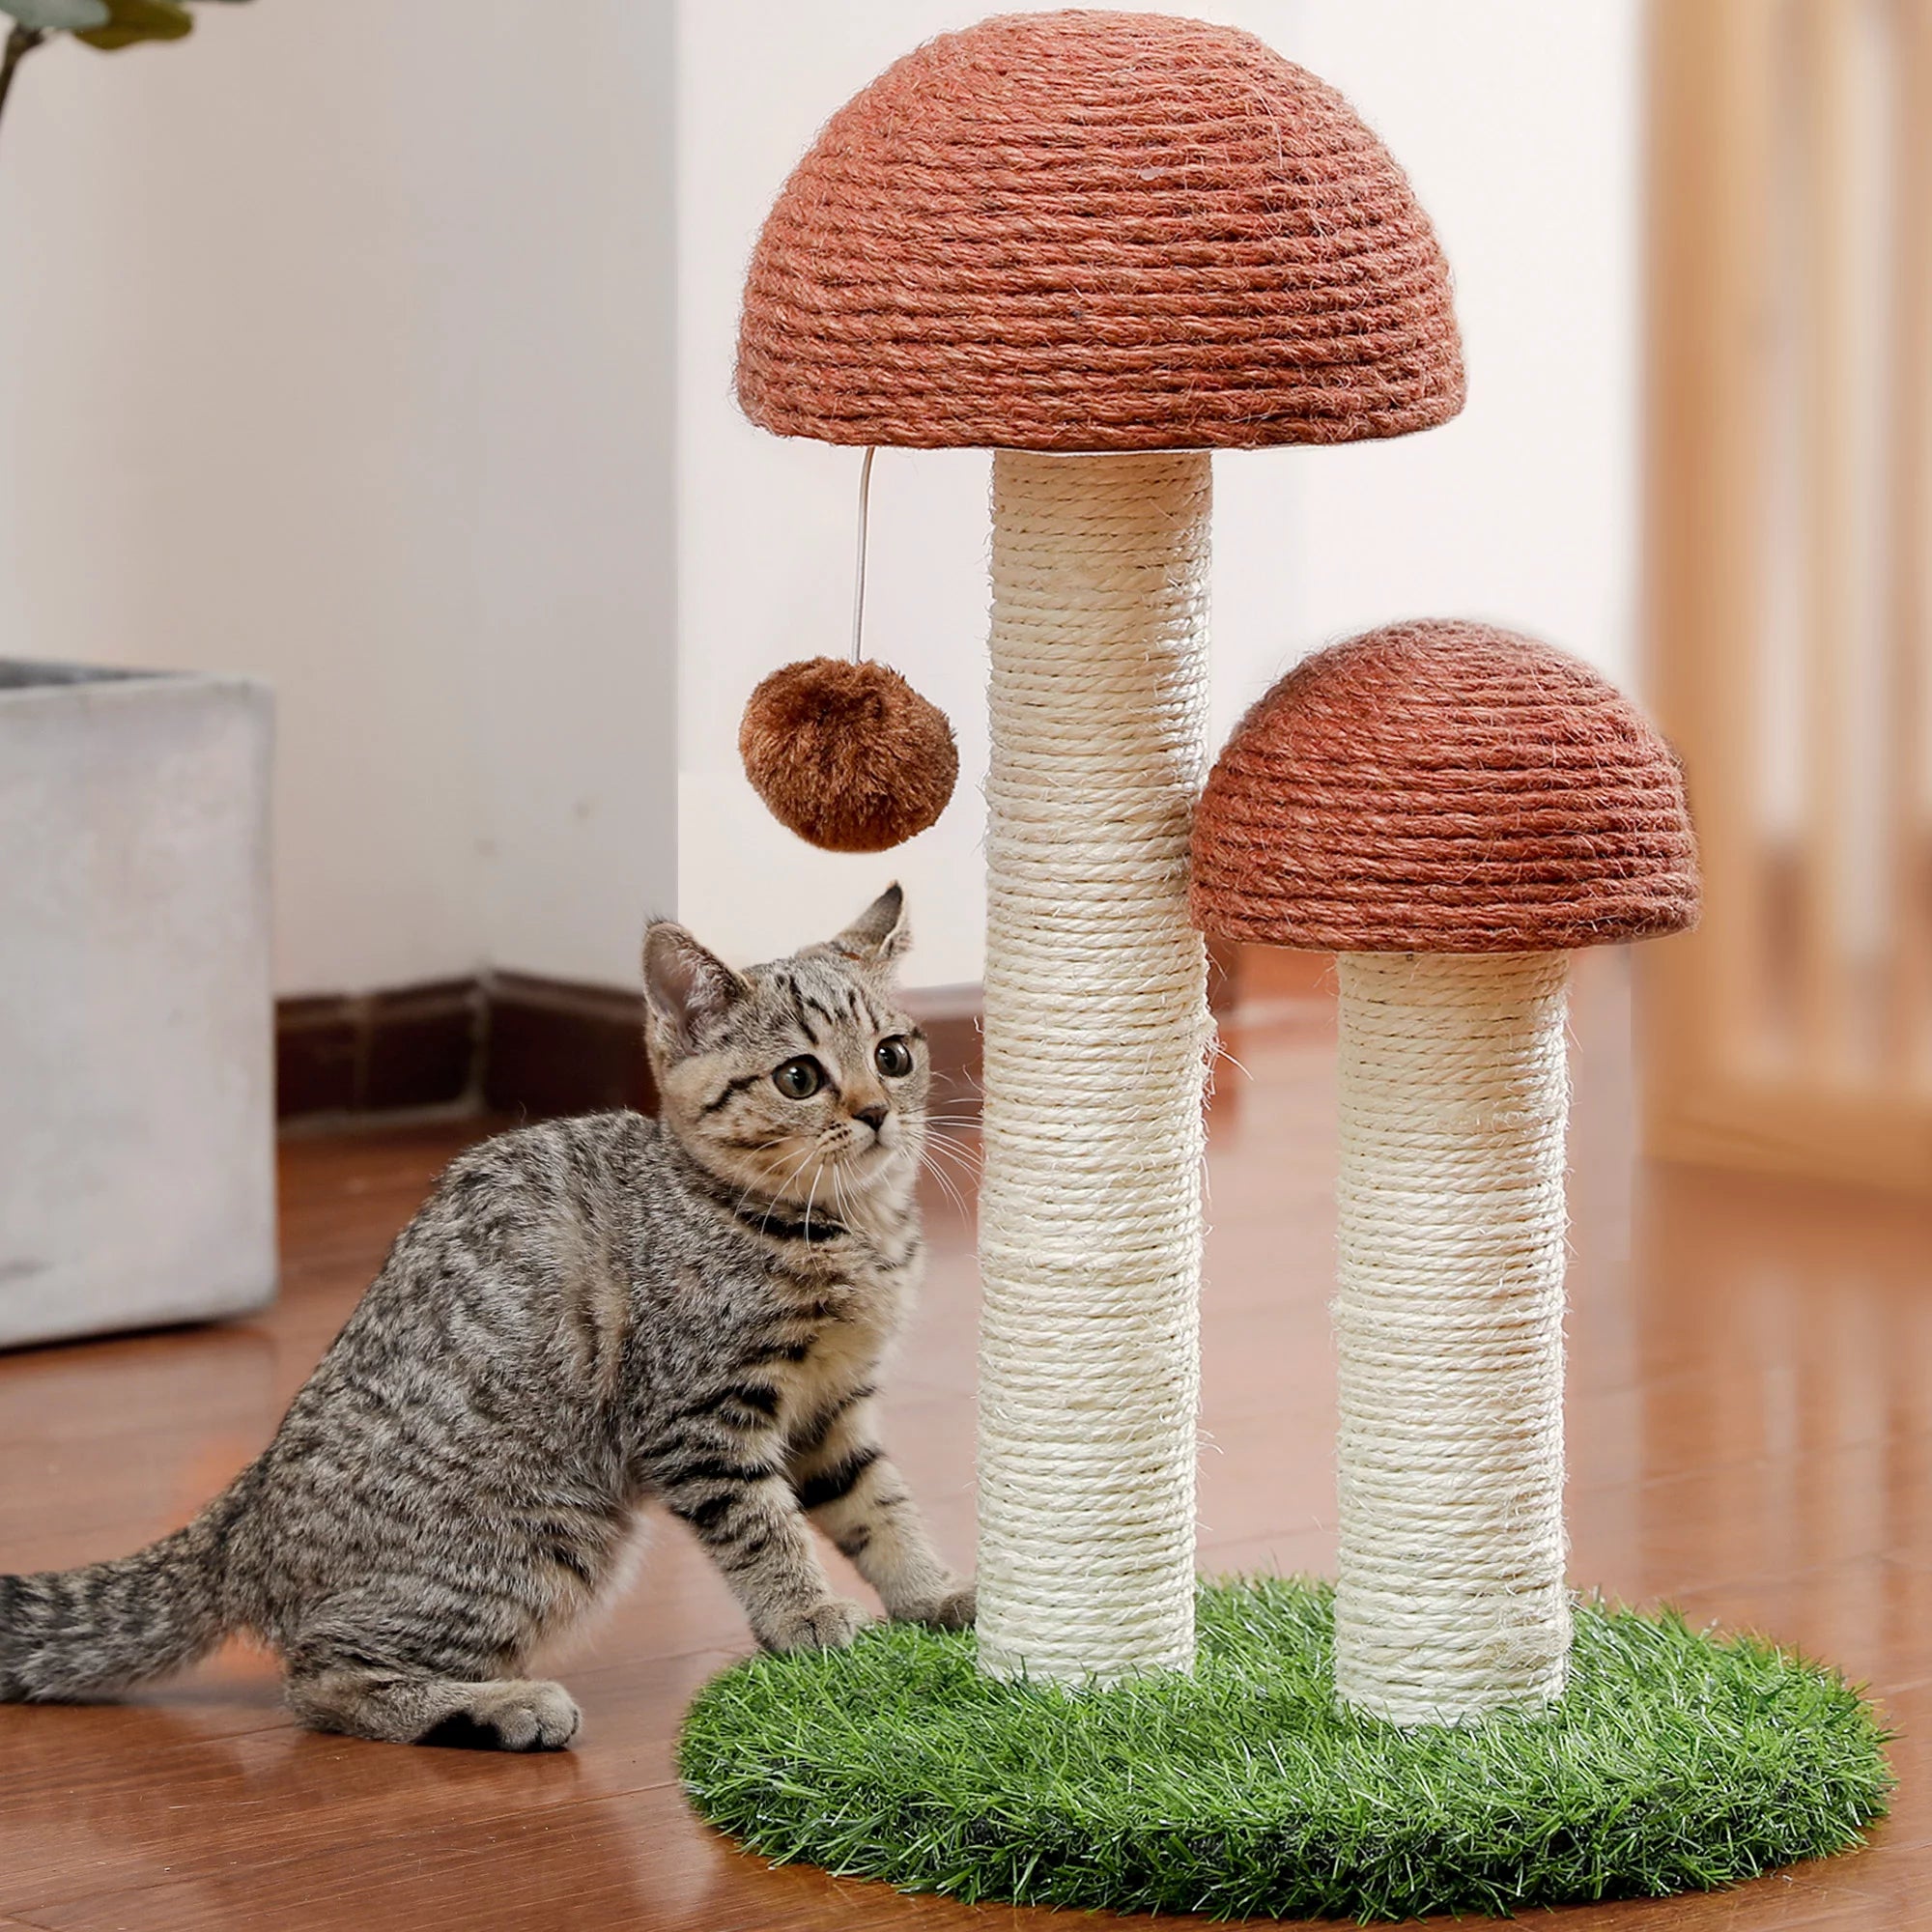 Postes rascadores modernos con torre de cactus y árbol para gatos grandes 